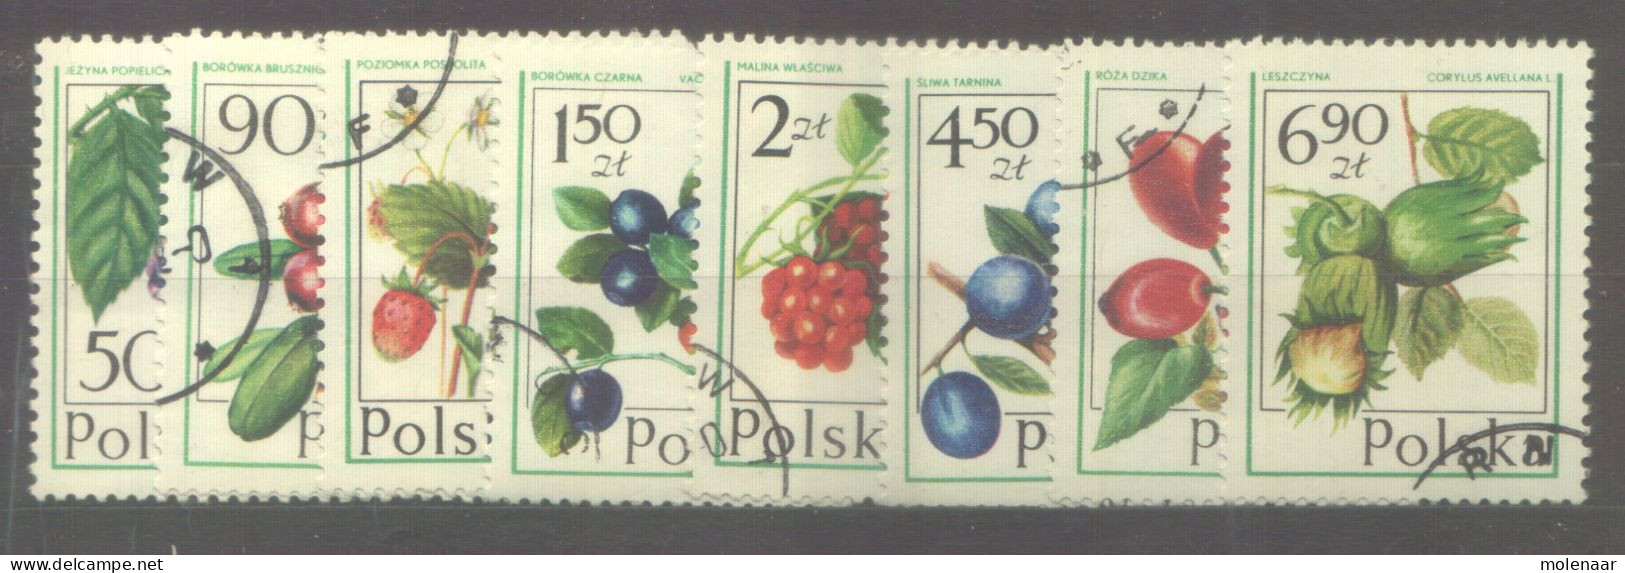 Postzegels > Europa > Polen > 1944-.... Republiek > 1971-80 > Gebruikt No. 2484-2491 (24140) - Usados